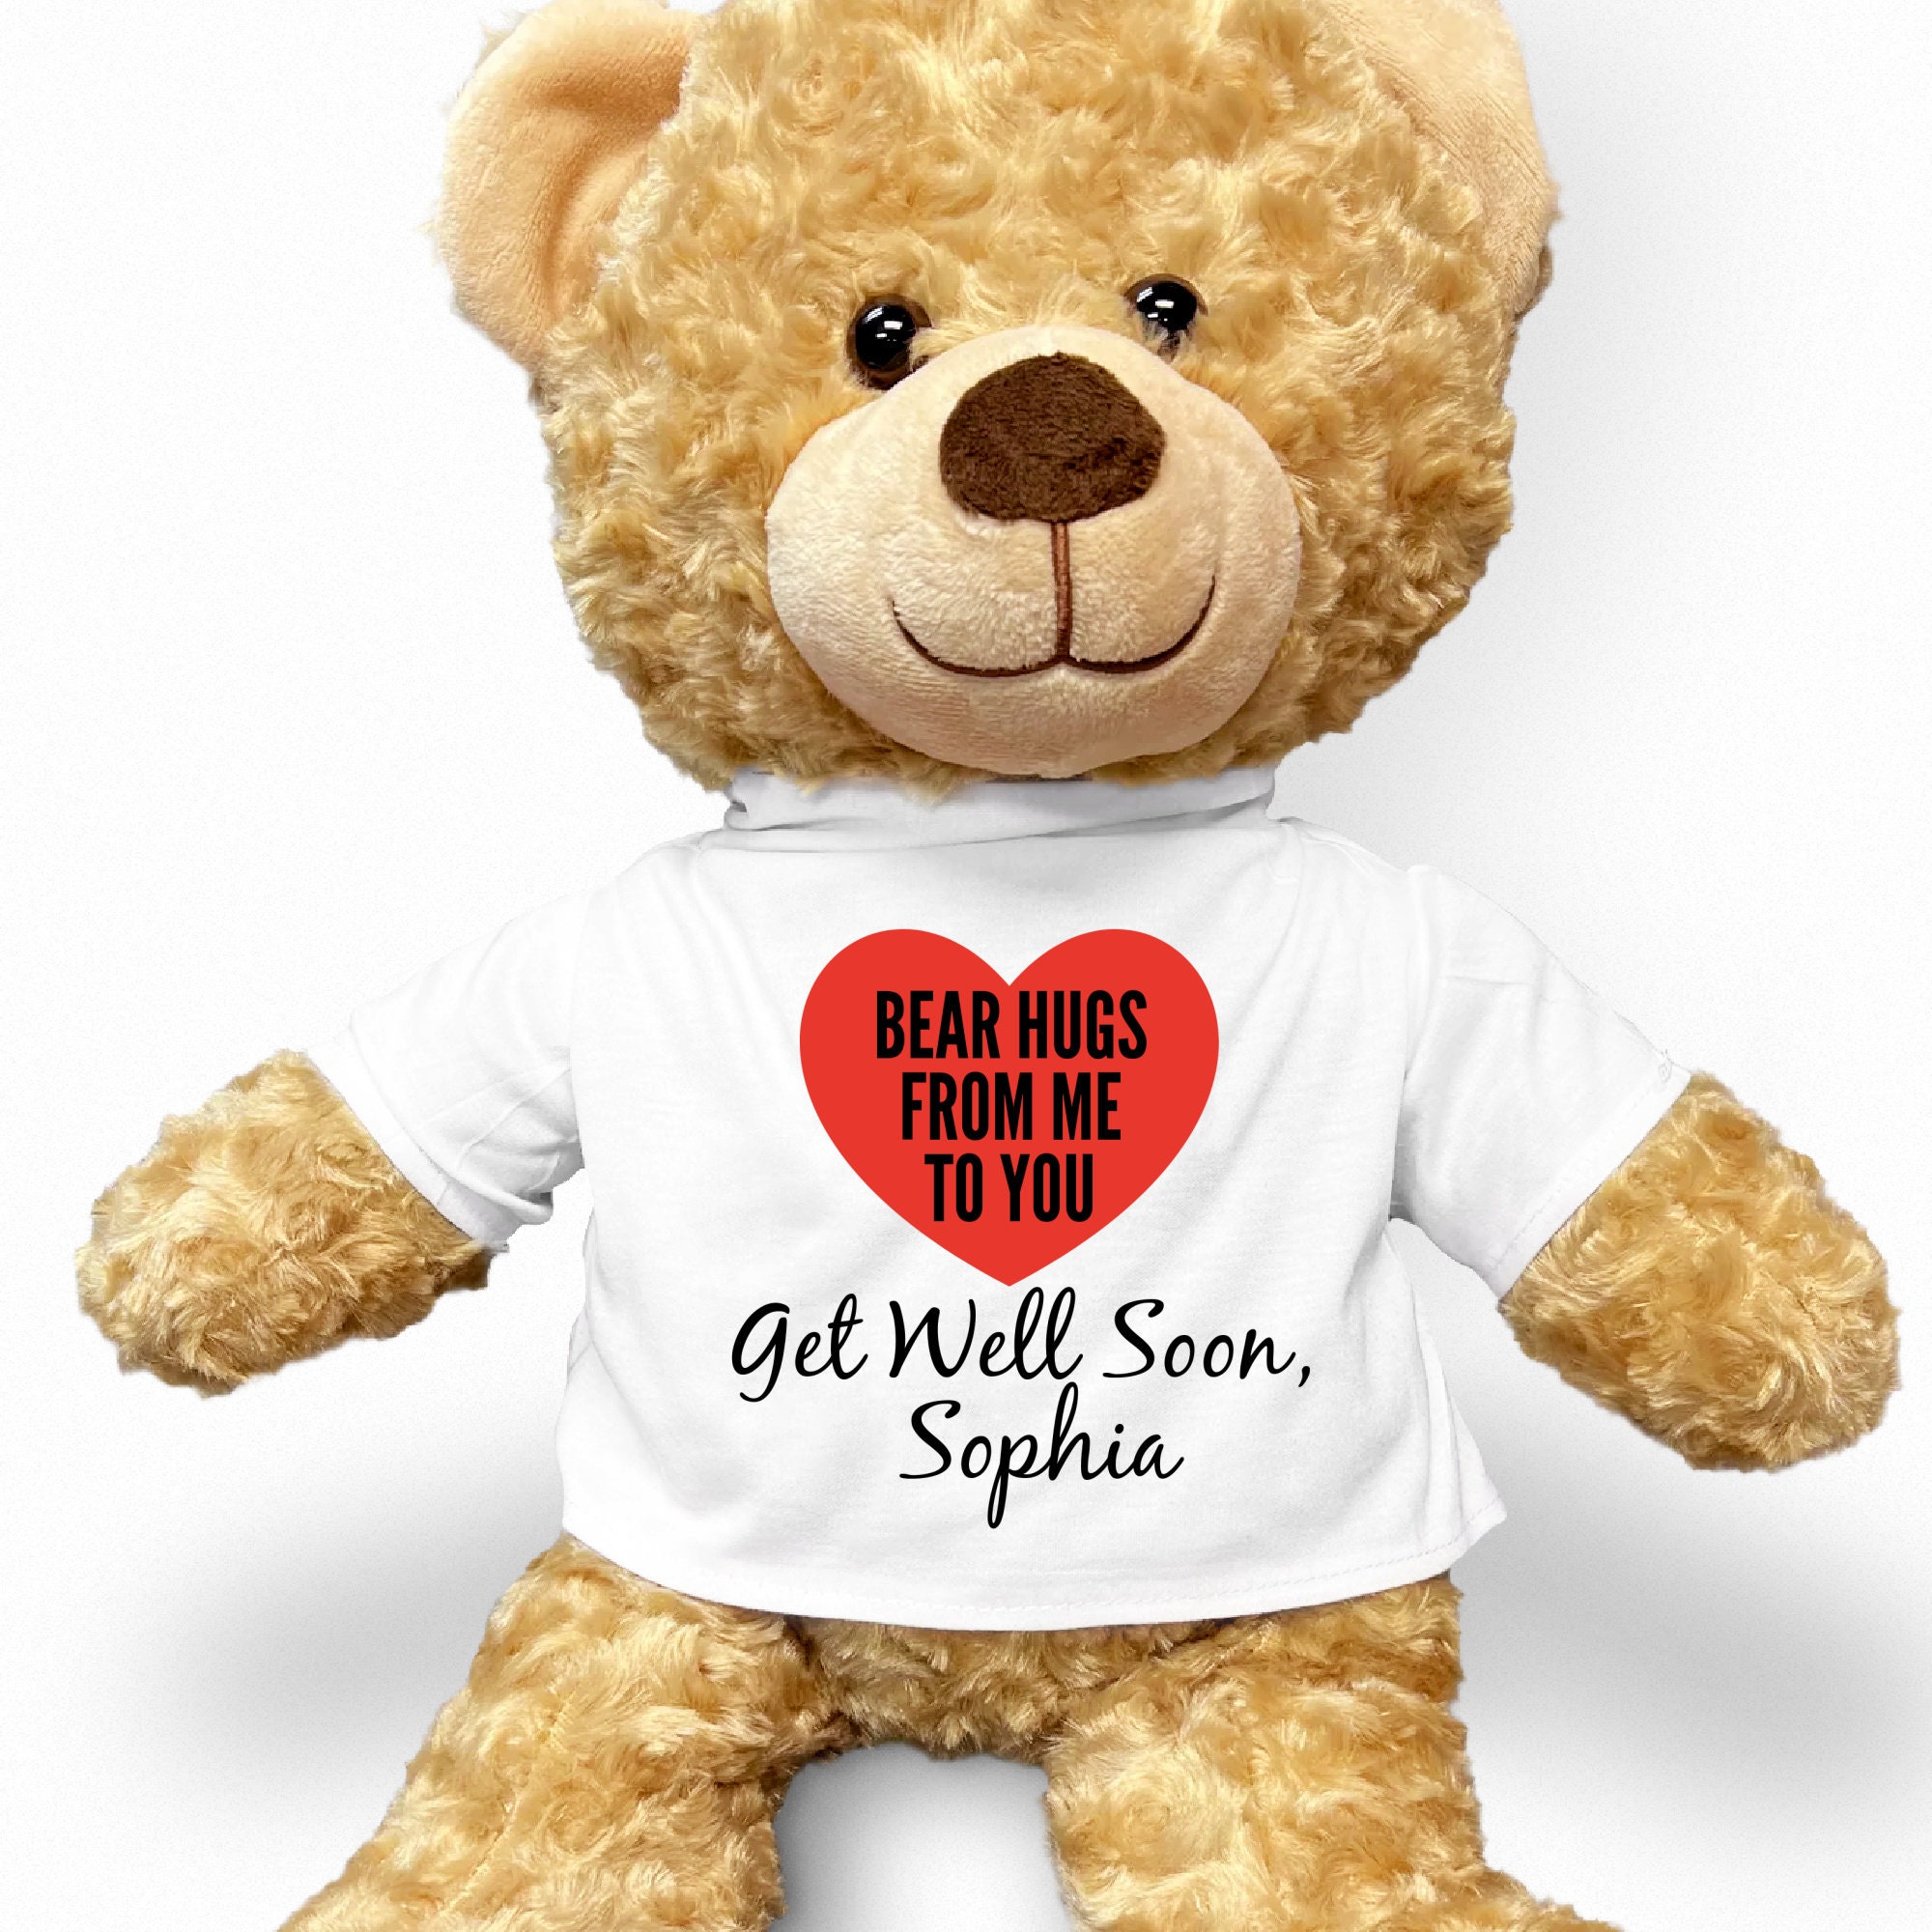 Get Well Soon Smiley Face Teddy Bear : Get Well Soon Teddy Bears